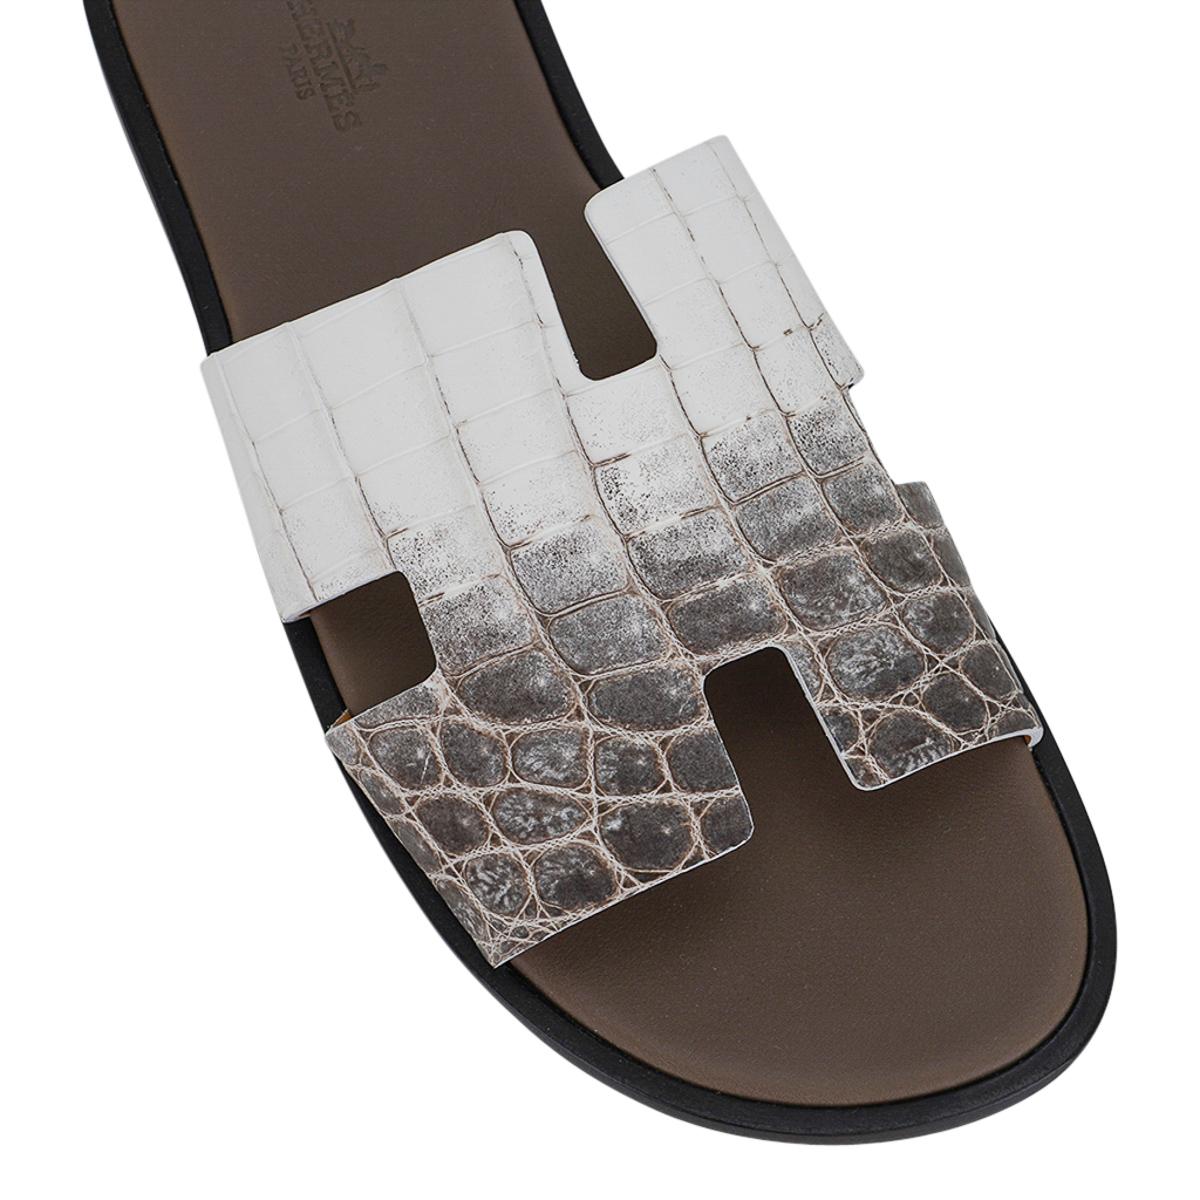 Mightychic propose une paire de sandales Hermes Izmir pour homme en crocodile Himalaya Blanc.
L'emblématique H découpé sur le dessus du pied en cuir Swift.
Sophistiqué dans une silhouette qui convient à toutes les garde-robes.
La semelle intérieure